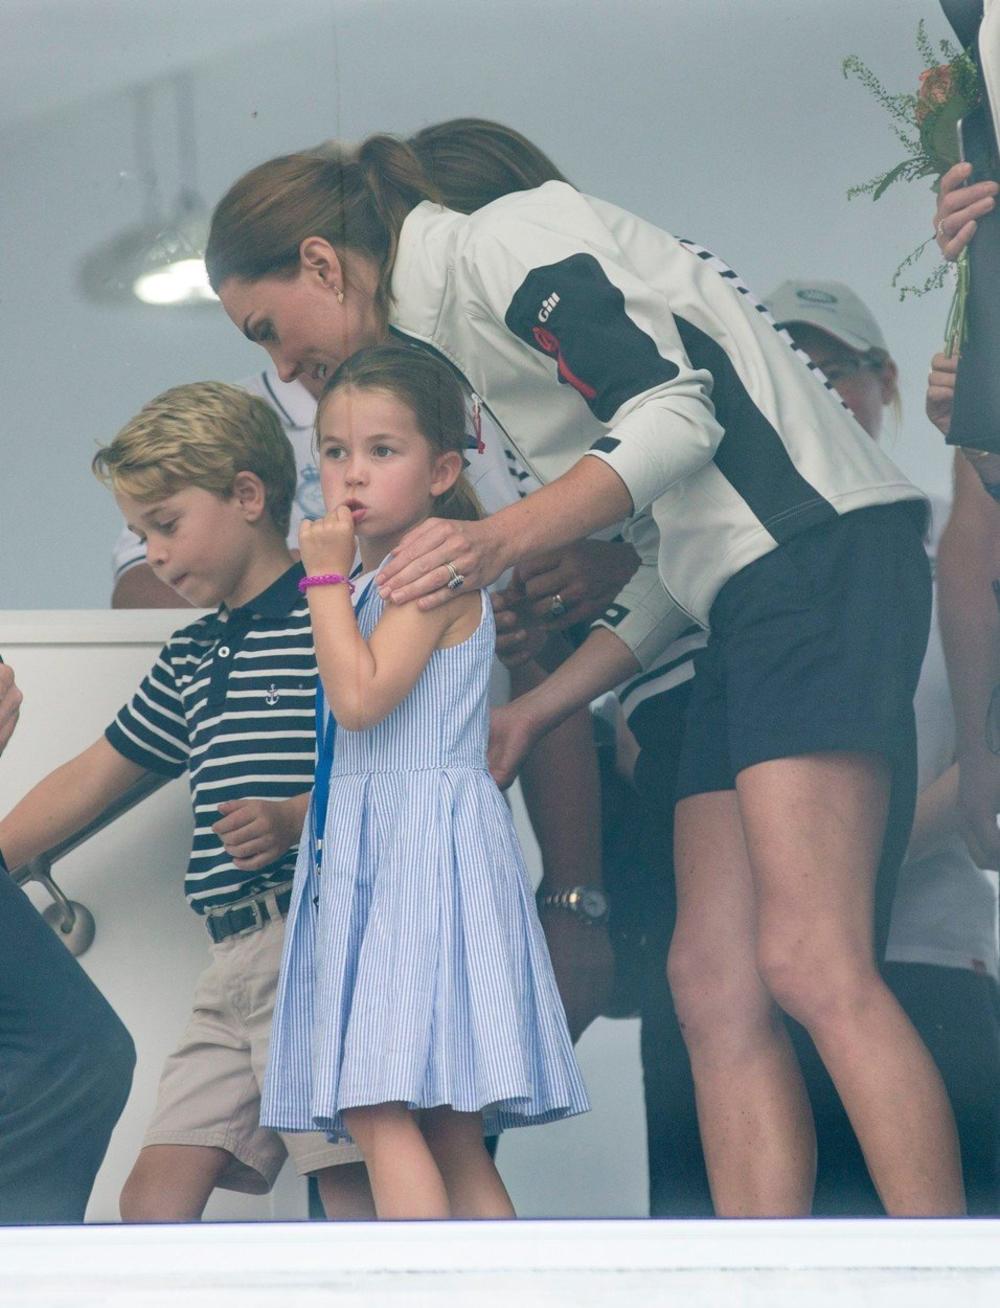 <p><strong>Princ Džordž</strong> i <strong>princeza Šarlot</strong> s vremena na vreme pridruže se svojim roditeljima u njihovim aktivnostima, a mnogi su primetili da je gotovo neverovatno da su tako mala deca uvek mirna i poslušna.</p>